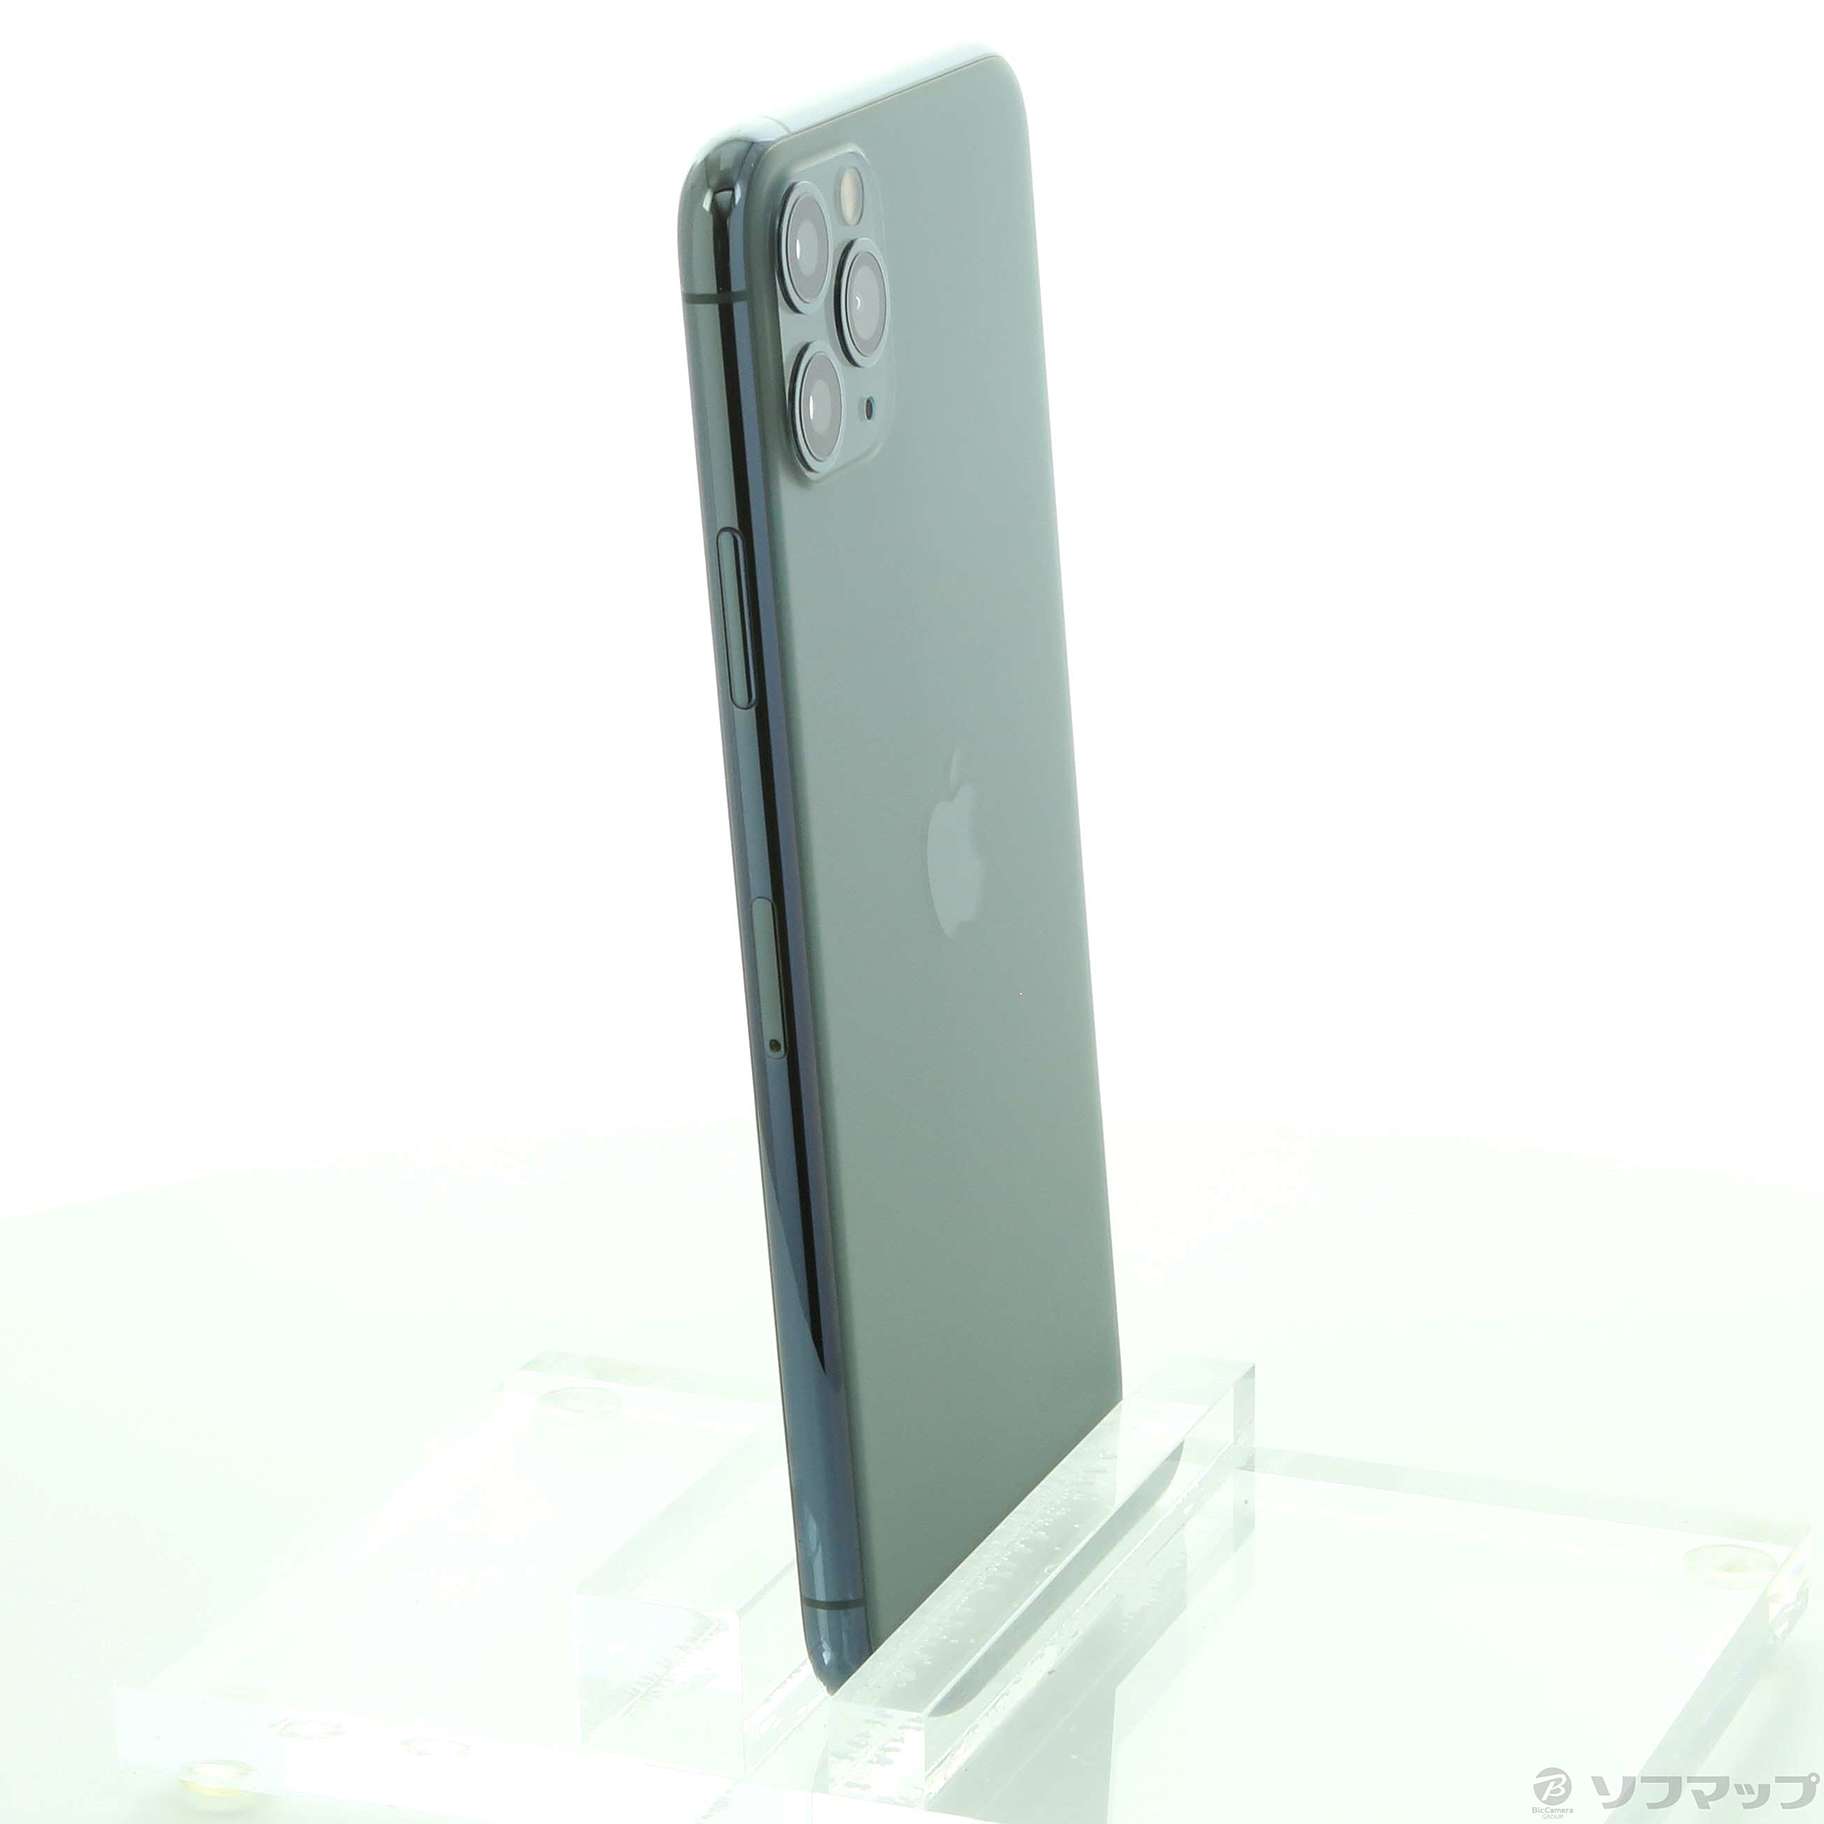 〔展示品〕 iPhone11 Pro Max 64GB ミッドナイトグリーン 3F913J／A SIMフリー